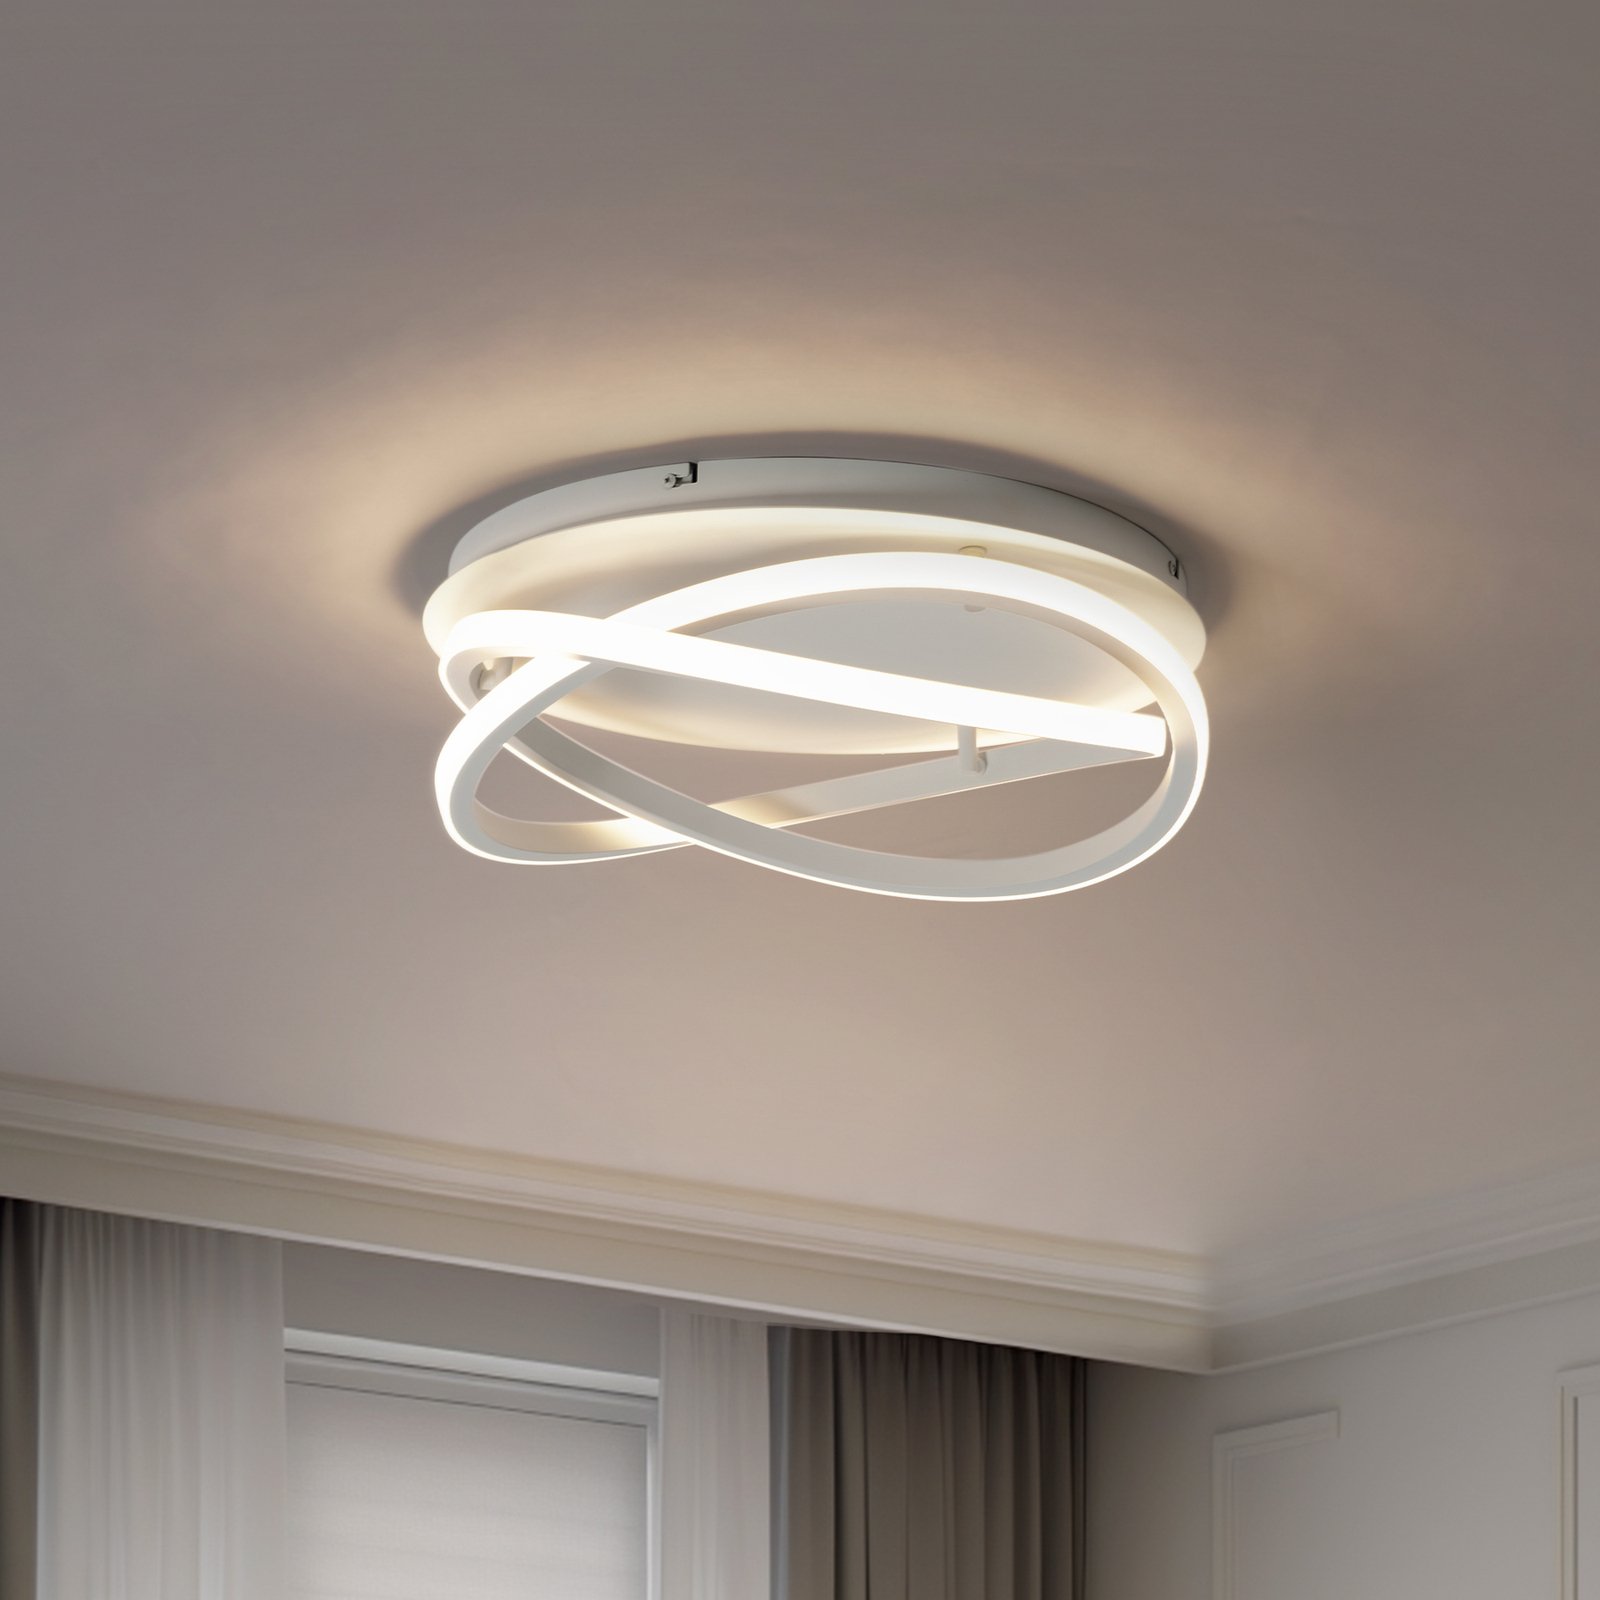 Lucande LED ceiling light Aldric, white, aluminium